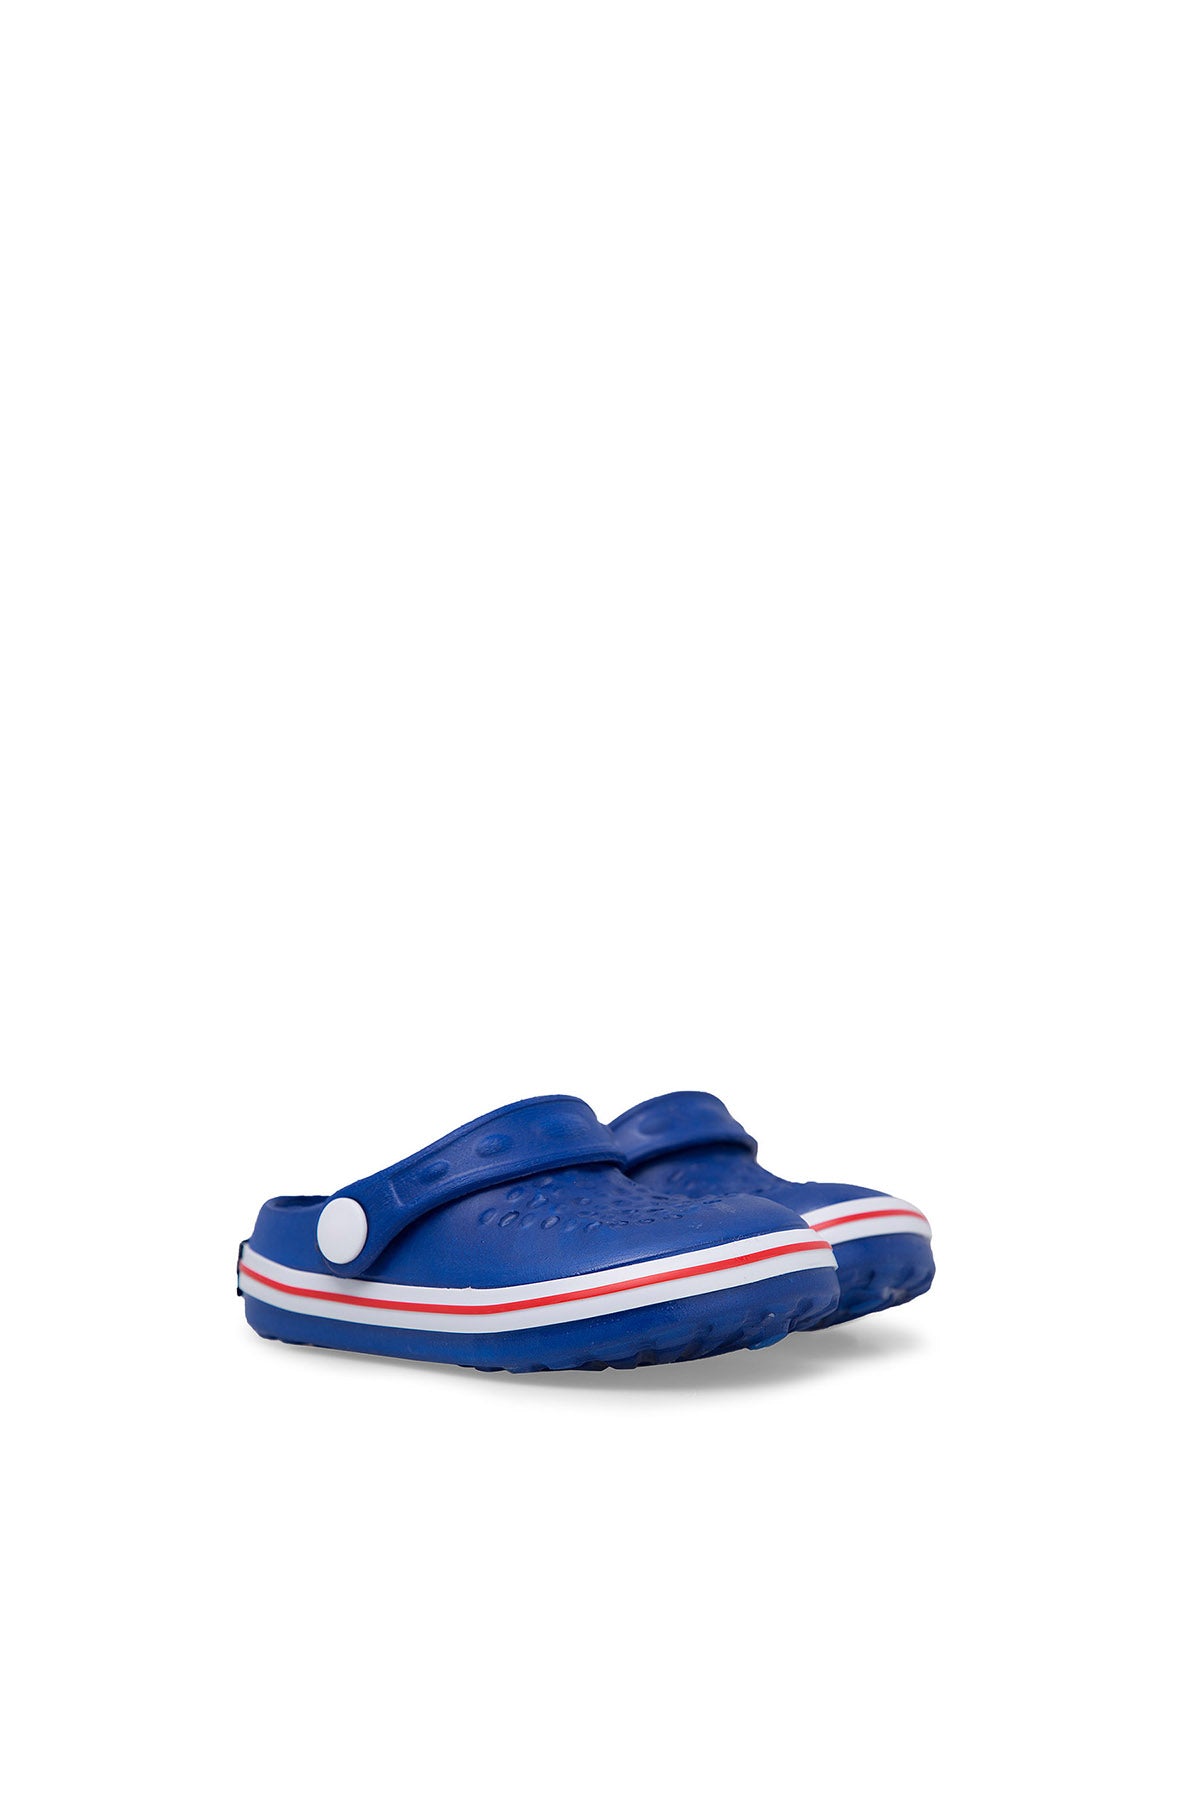 Akınalbella Çocuk Sandalet E060P008 Mavi-Beyaz-Kırmızı